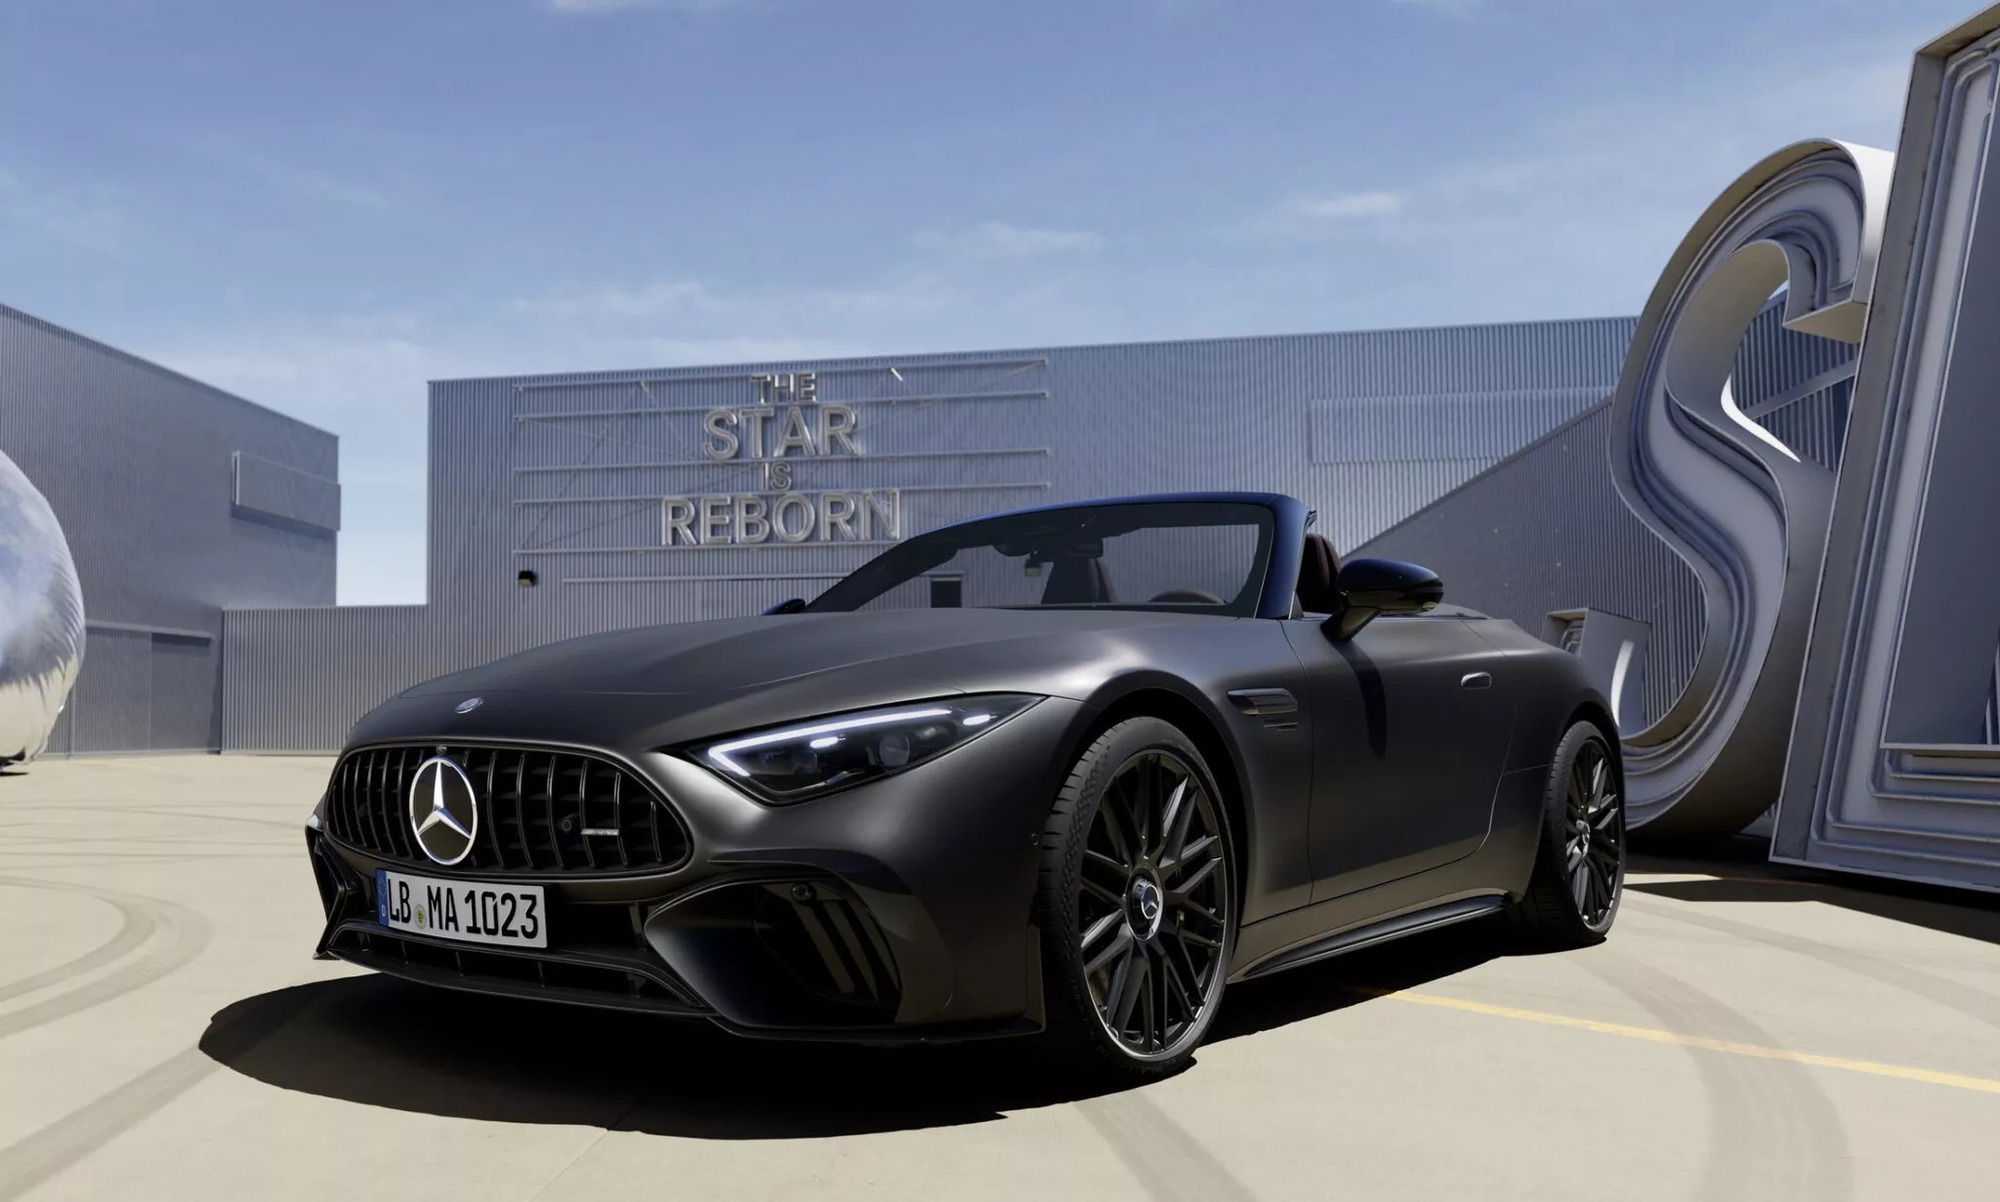 Mercedes-Maybach sắp có loạt xe siêu sang mới cho giới siêu giàu, cạnh tranh Rolls-Royce, Bentley- Ảnh 4.